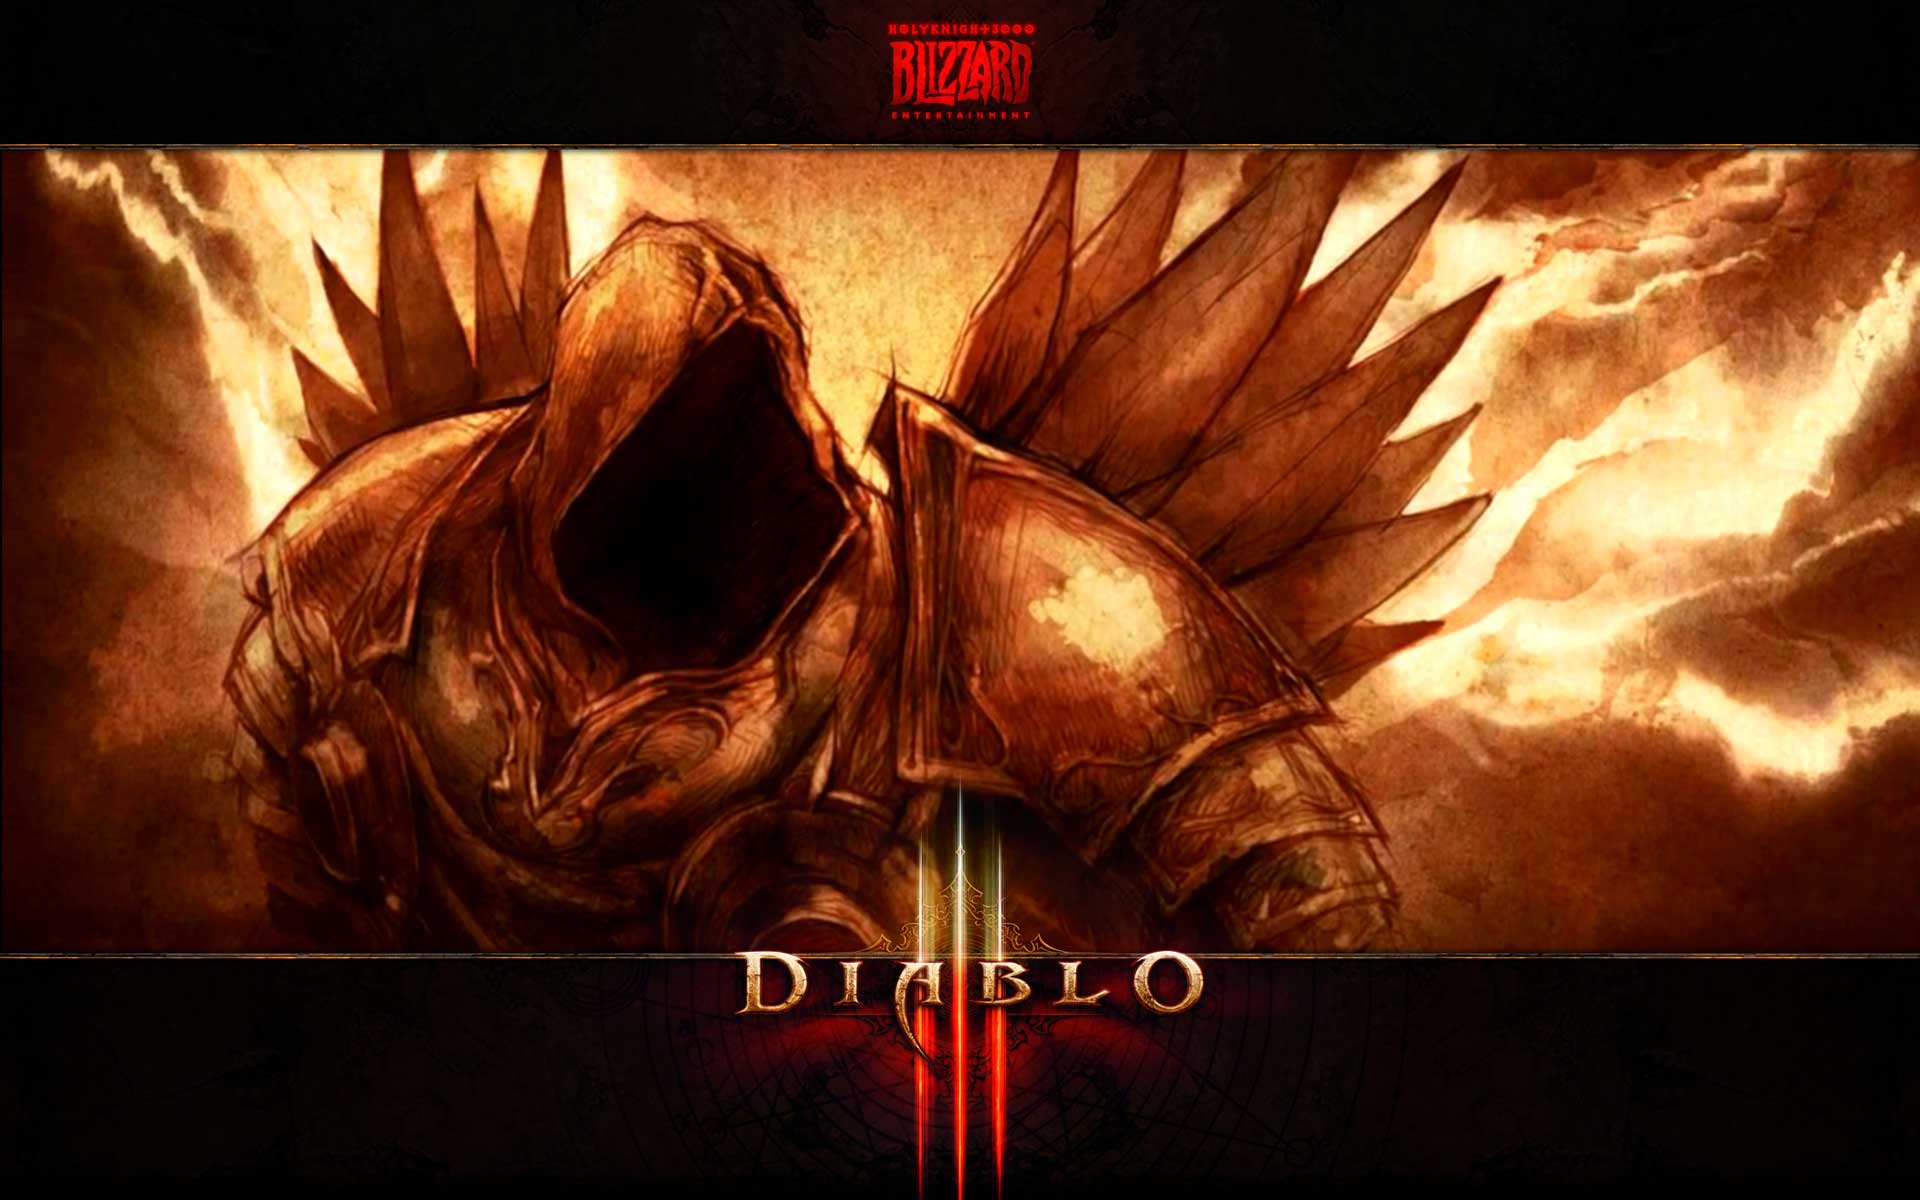 Diablo 3 monk wallpaper 4243 hd wallpapers in games imagesci com ...